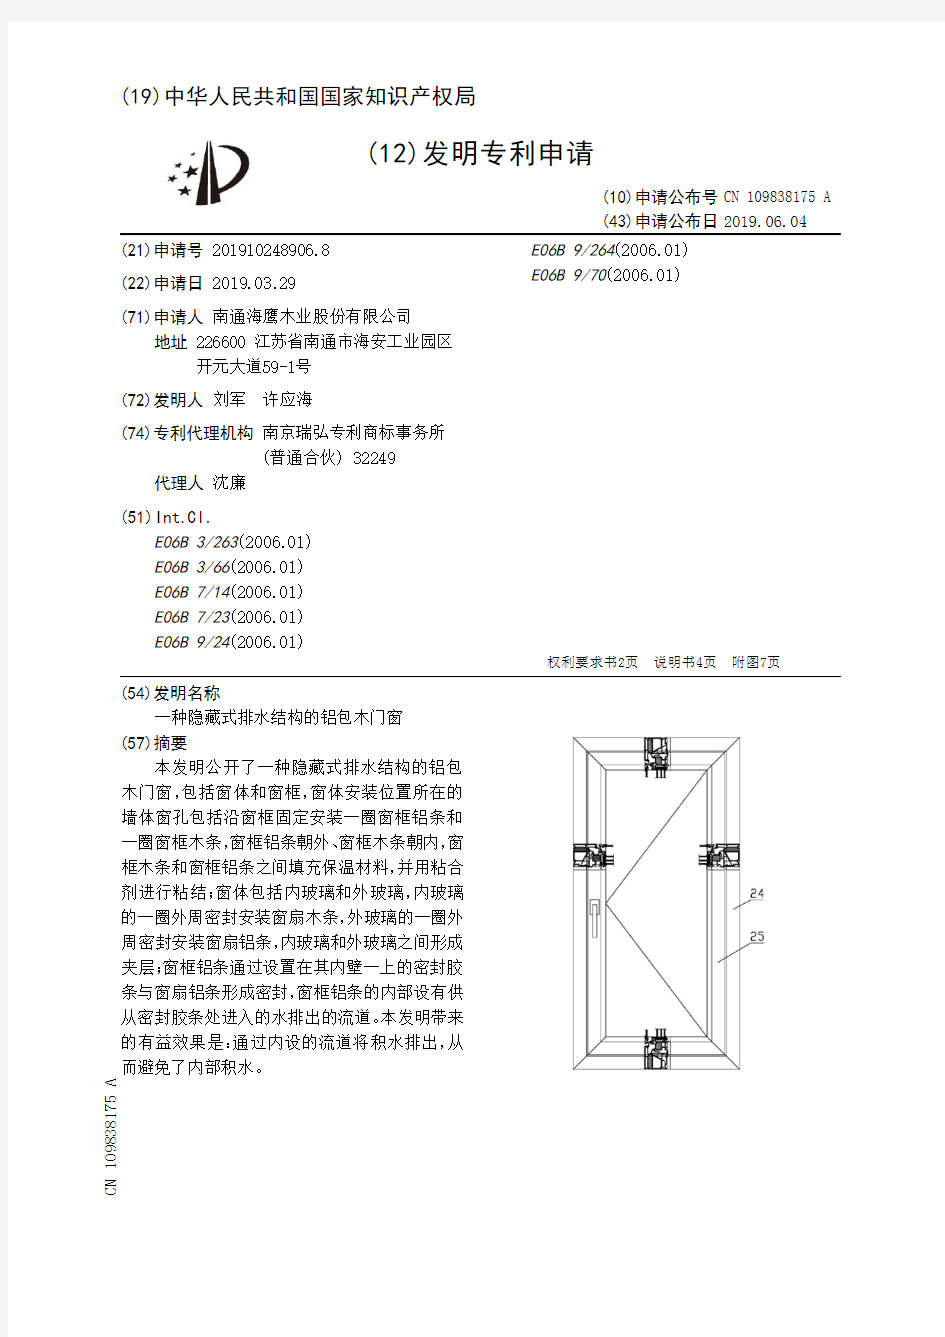 【CN109838175A】一种隐藏式排水结构的铝包木门窗【专利】